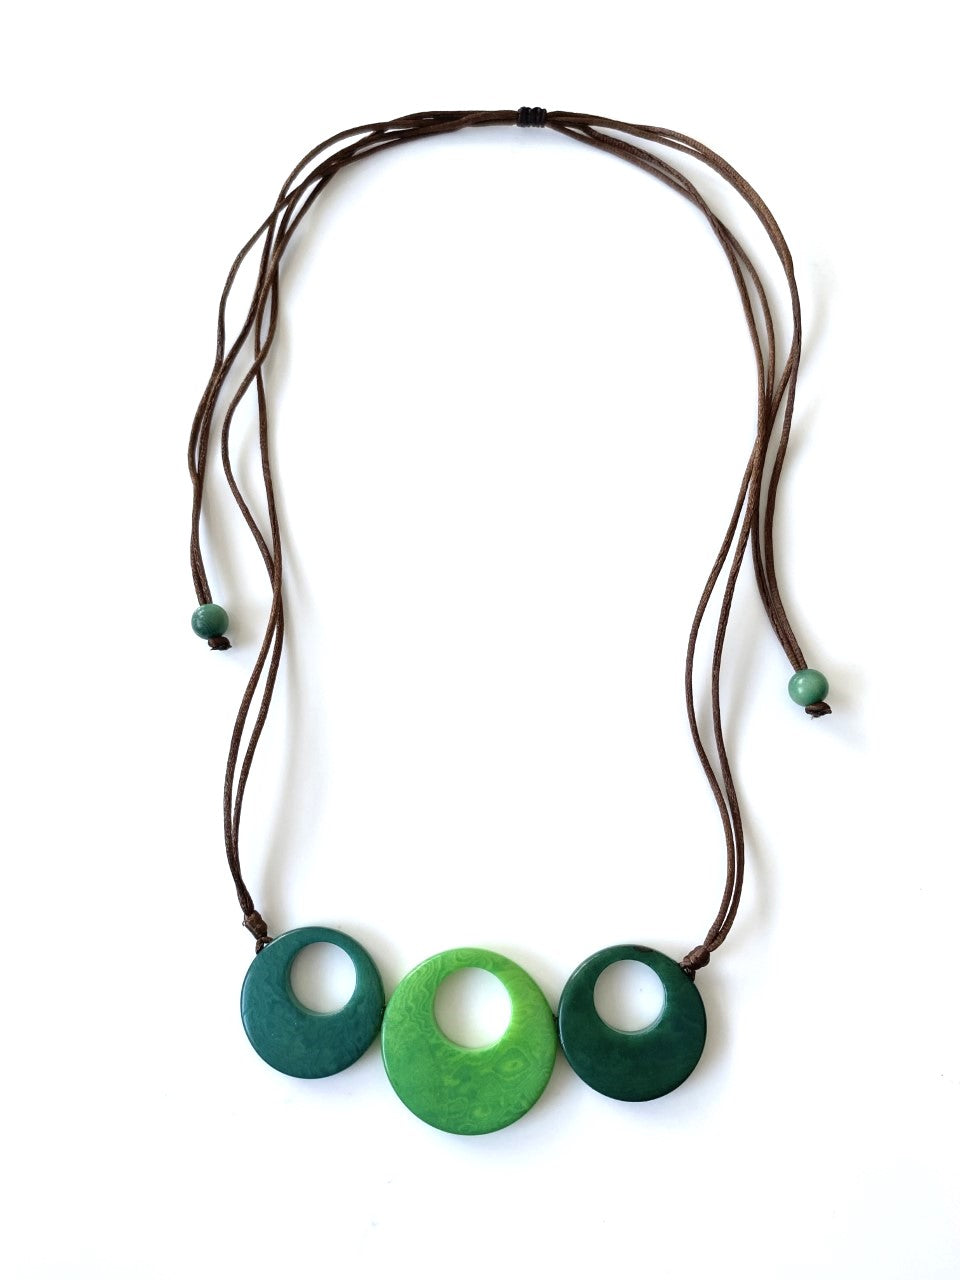 Treslunas necklace - Green tones